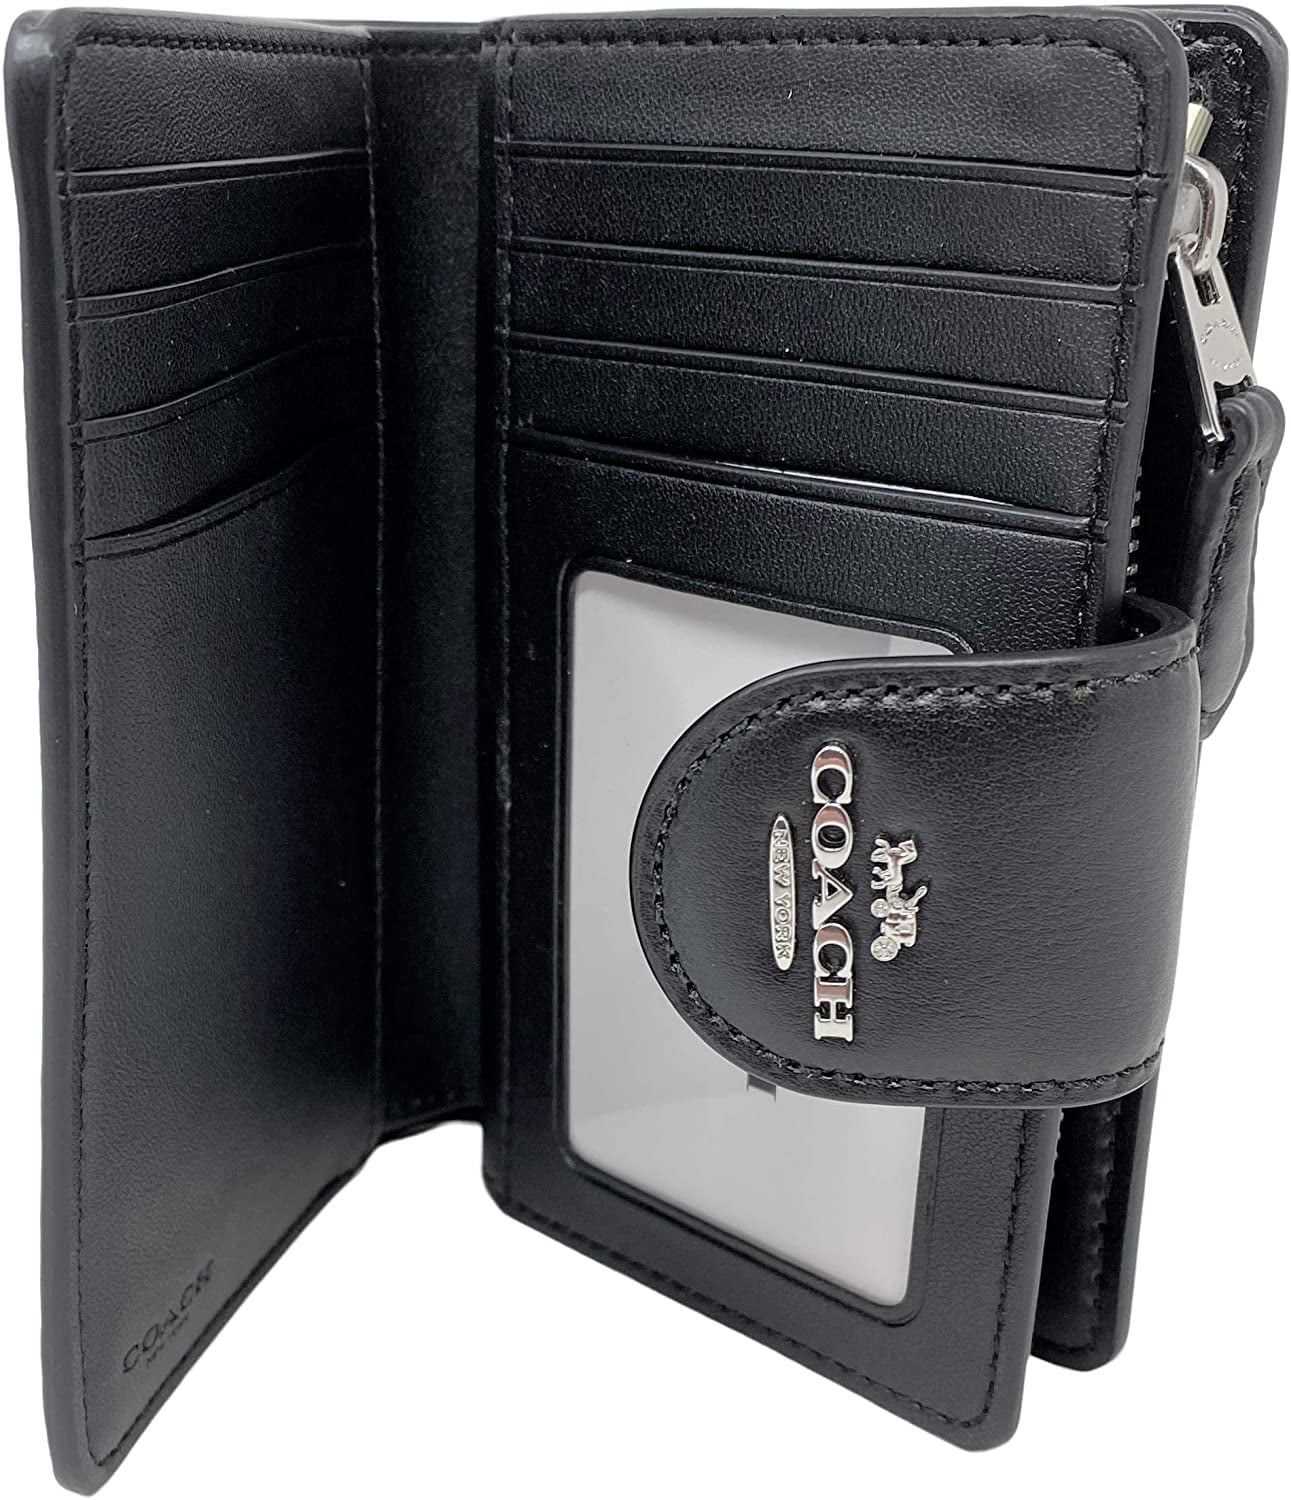 Coach Women's Medium Leather Corner Zip Wallet in Signature Brown/Black,  Women